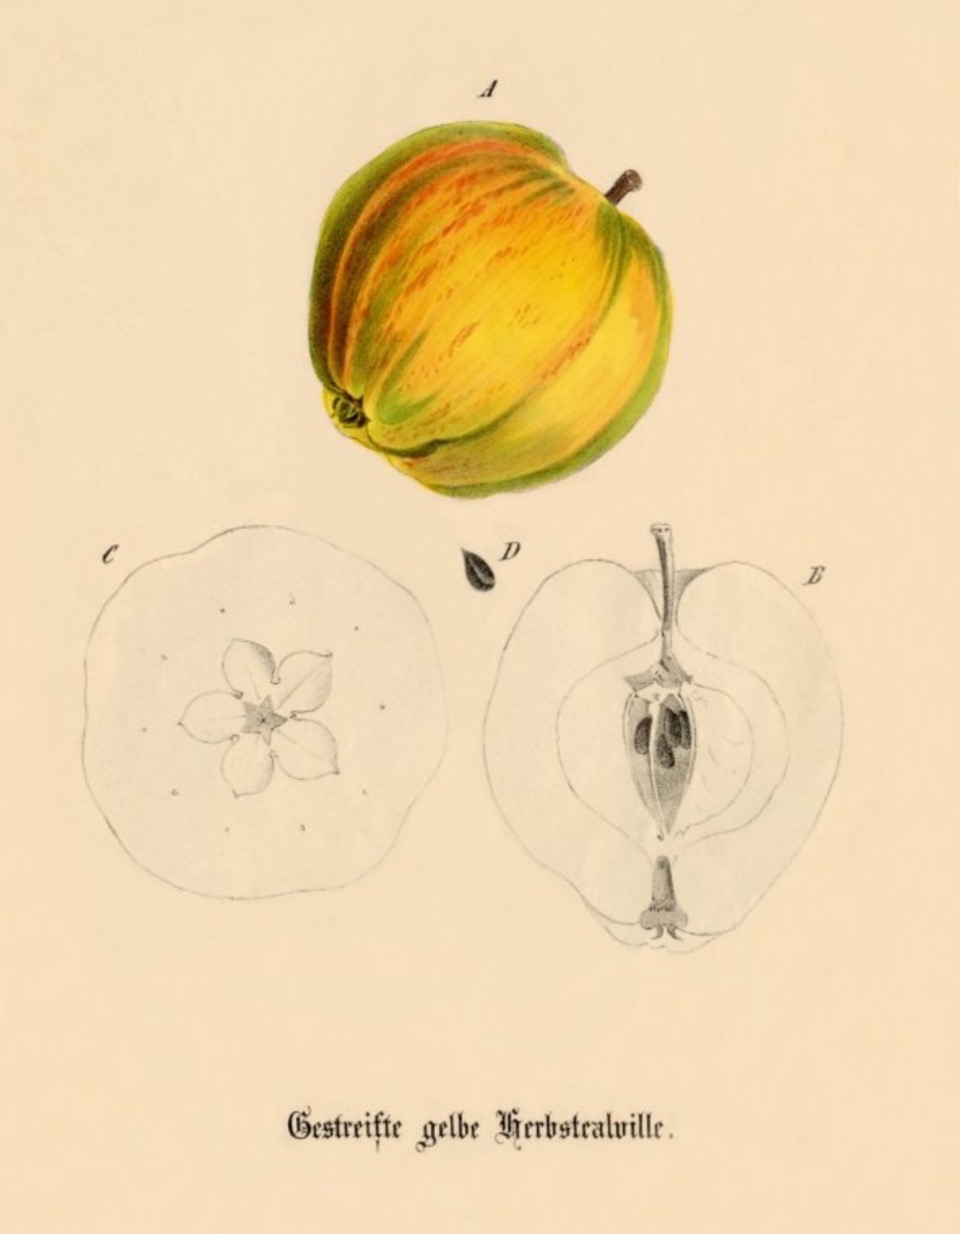 Historische Abbildung eines gelb-rötlichen und eines aufgeschnittenen Apfels; USDABUND Lemgo Obstsortendatenbank